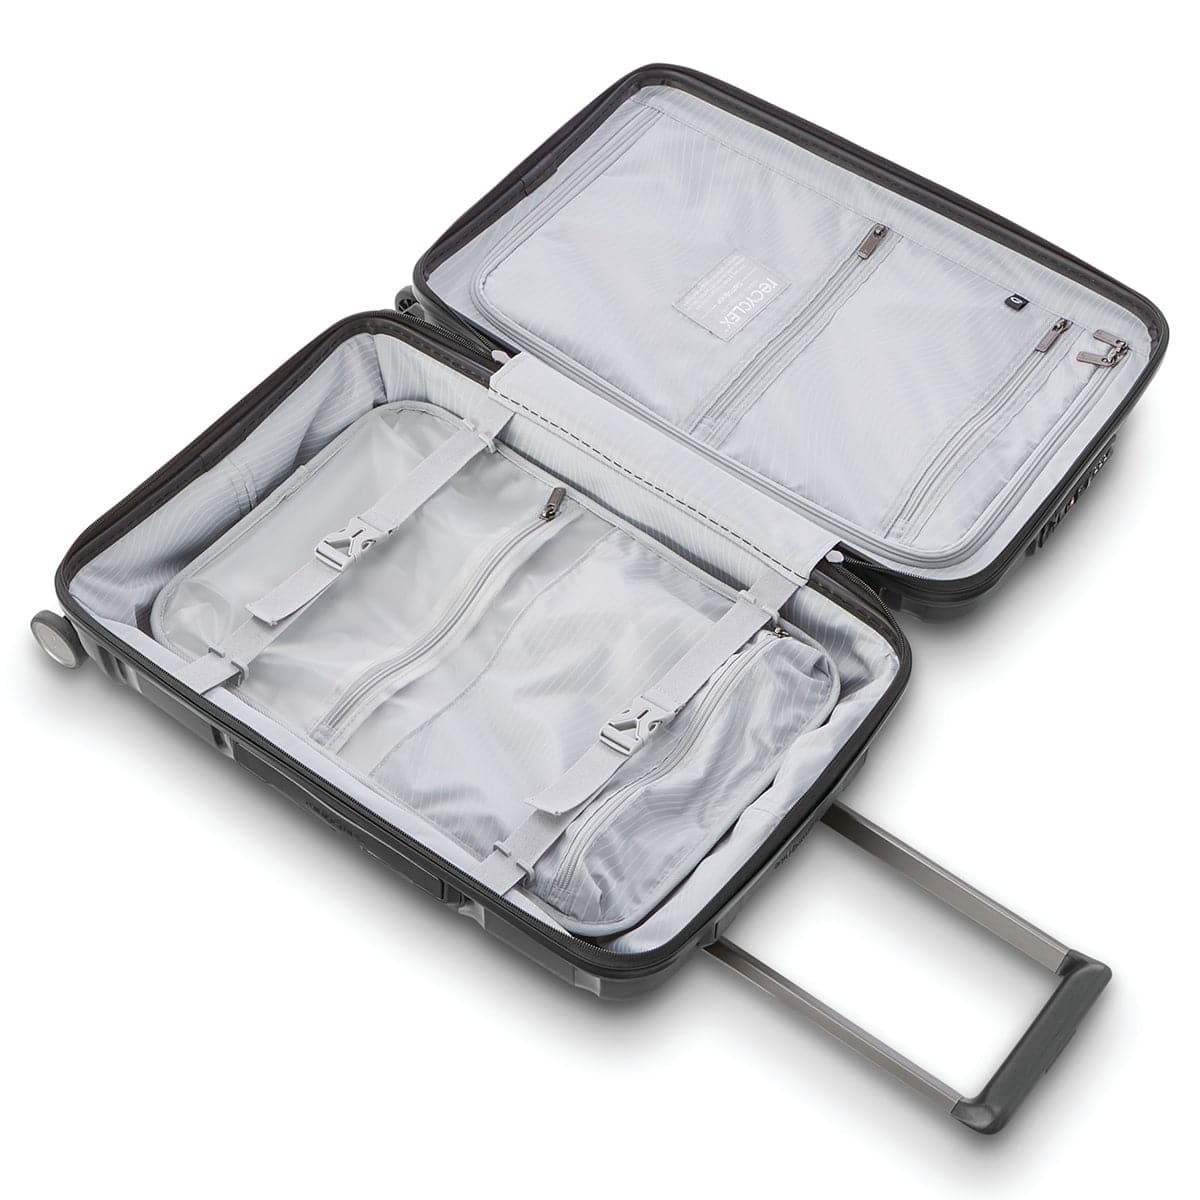 Samsonite Outline Pro Hardside 22" Spinner Carry-On Luggage